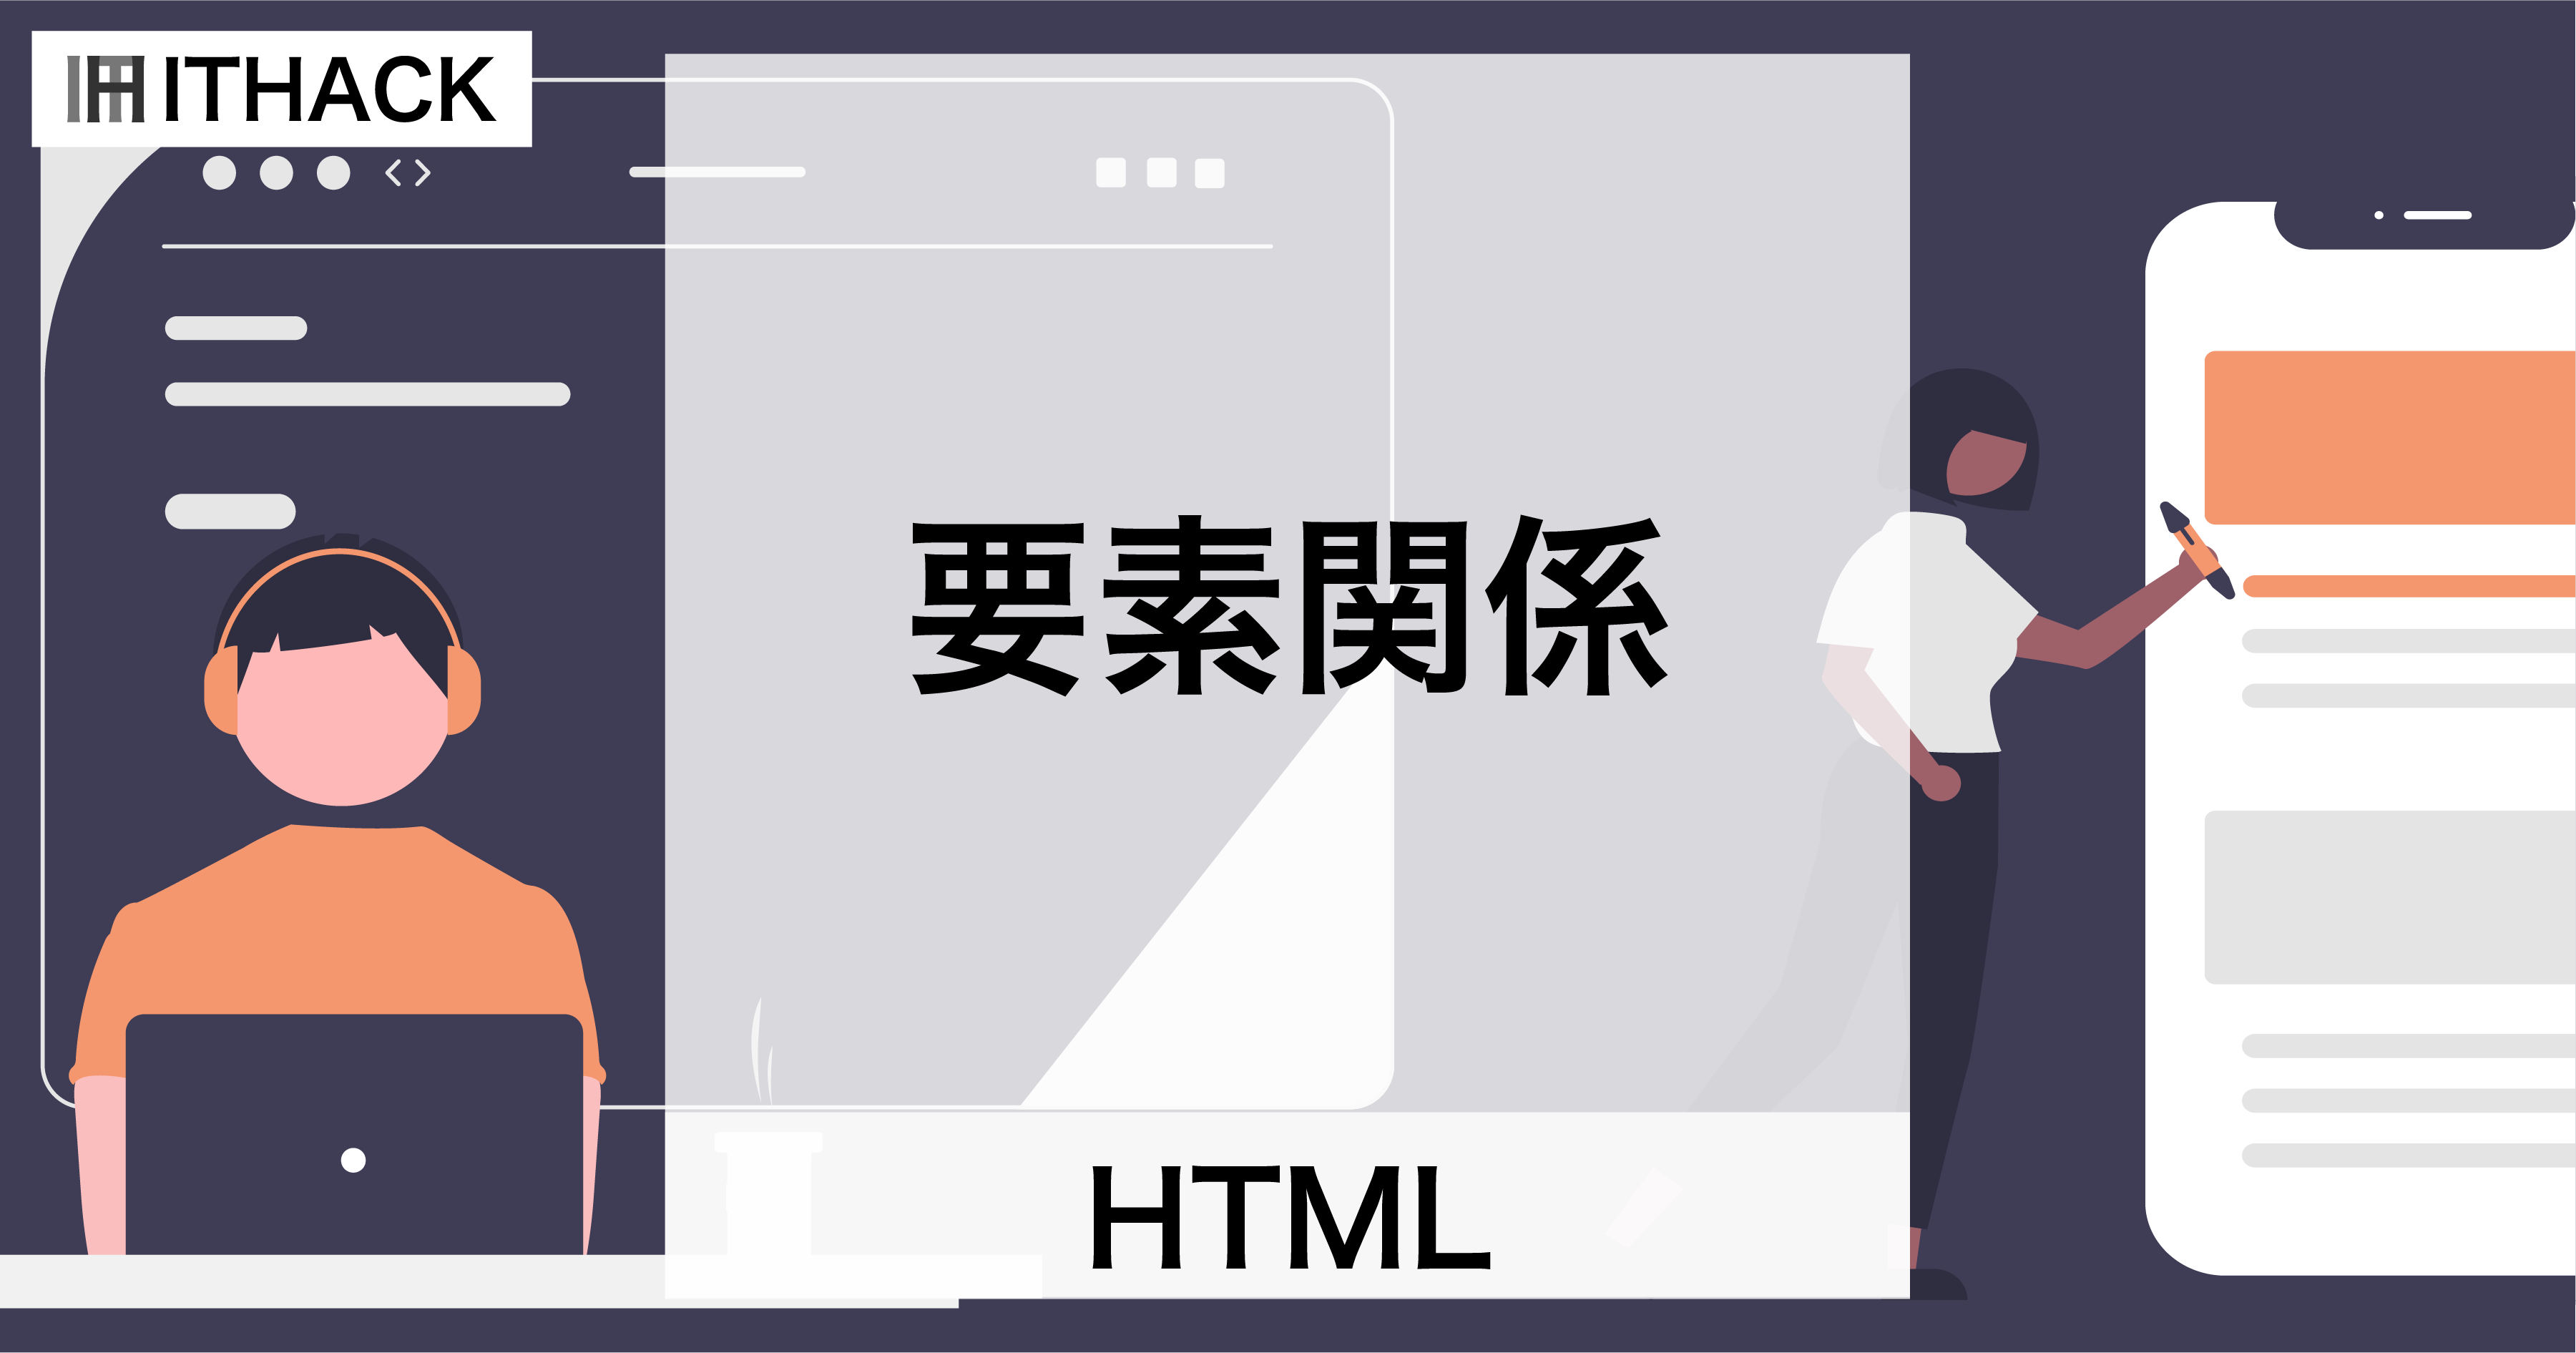 【HTML】要素の関係性 - 親子孫関係・兄弟関係